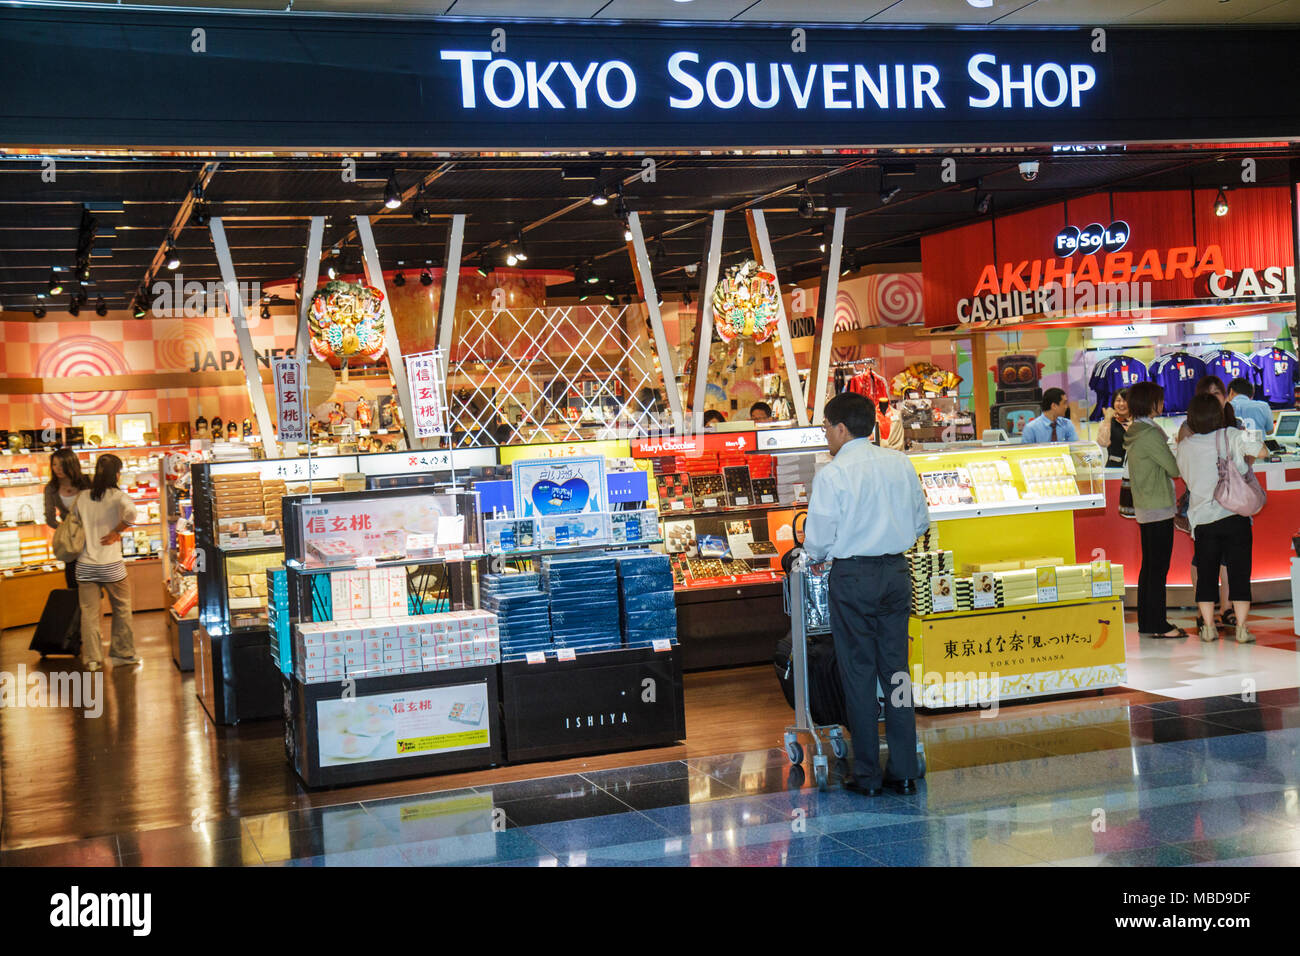 Louis Vuitton Haneda Airport T3 store, Japan